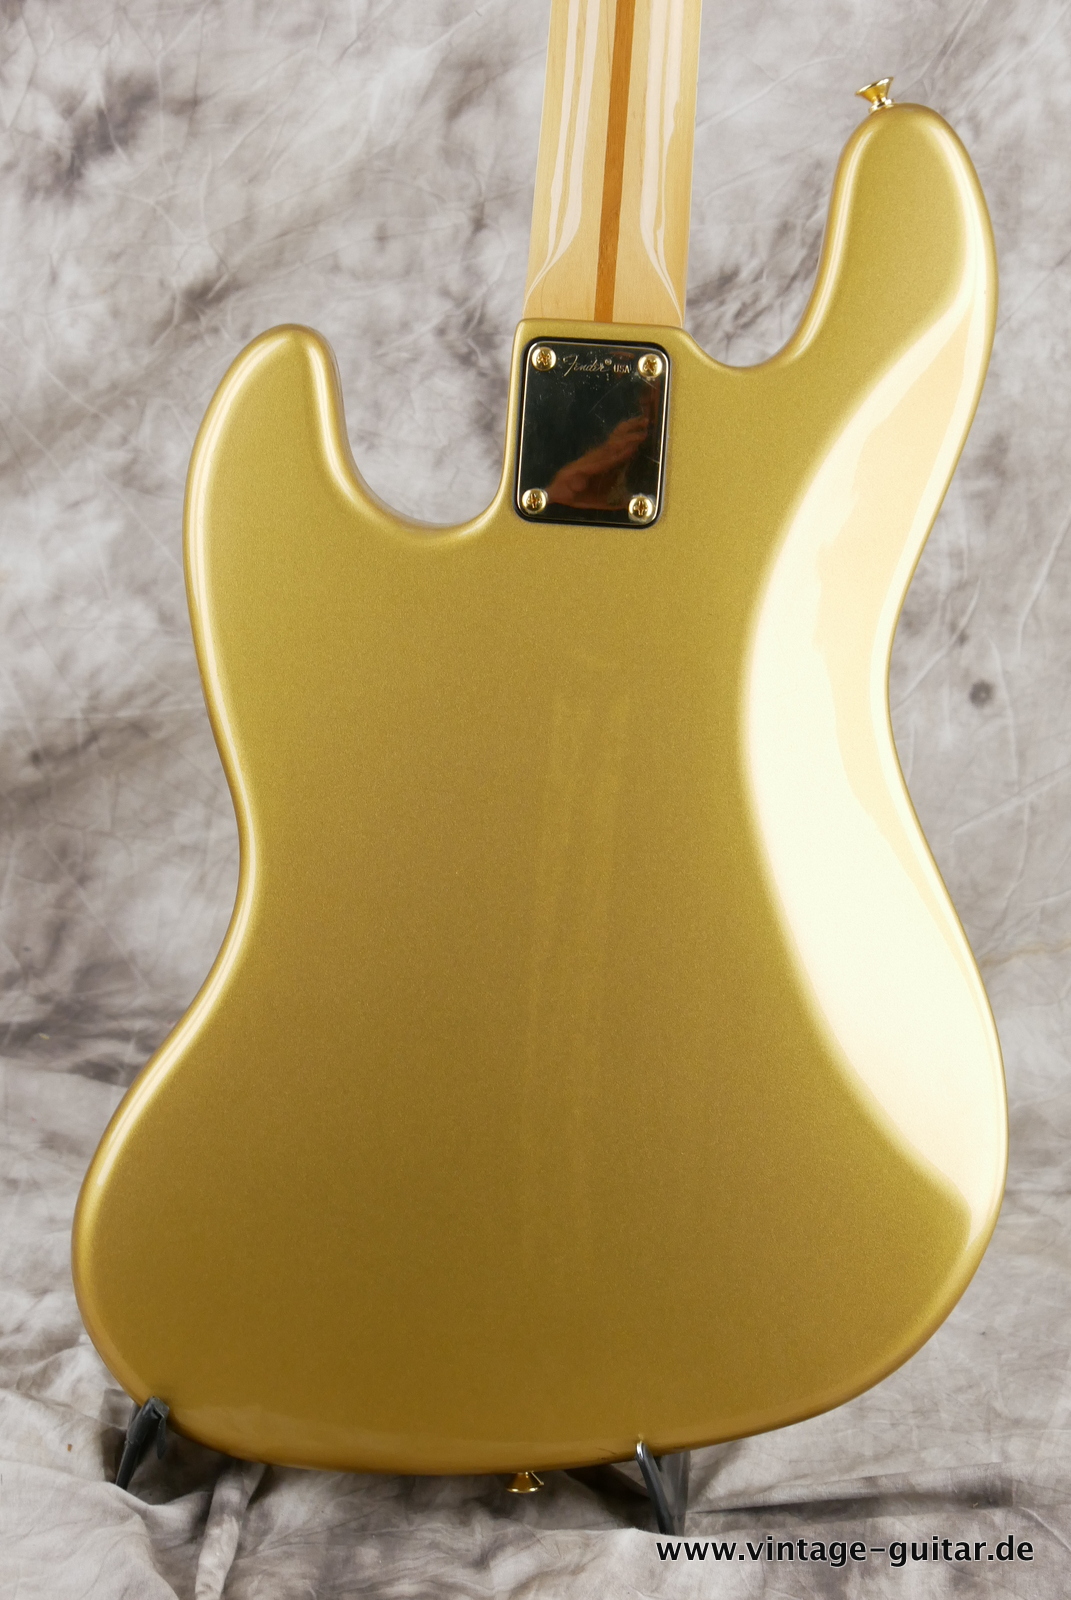 Fender_Jazz_Bass_collectors_series_USA_gold_metallic_1982-004.JPG